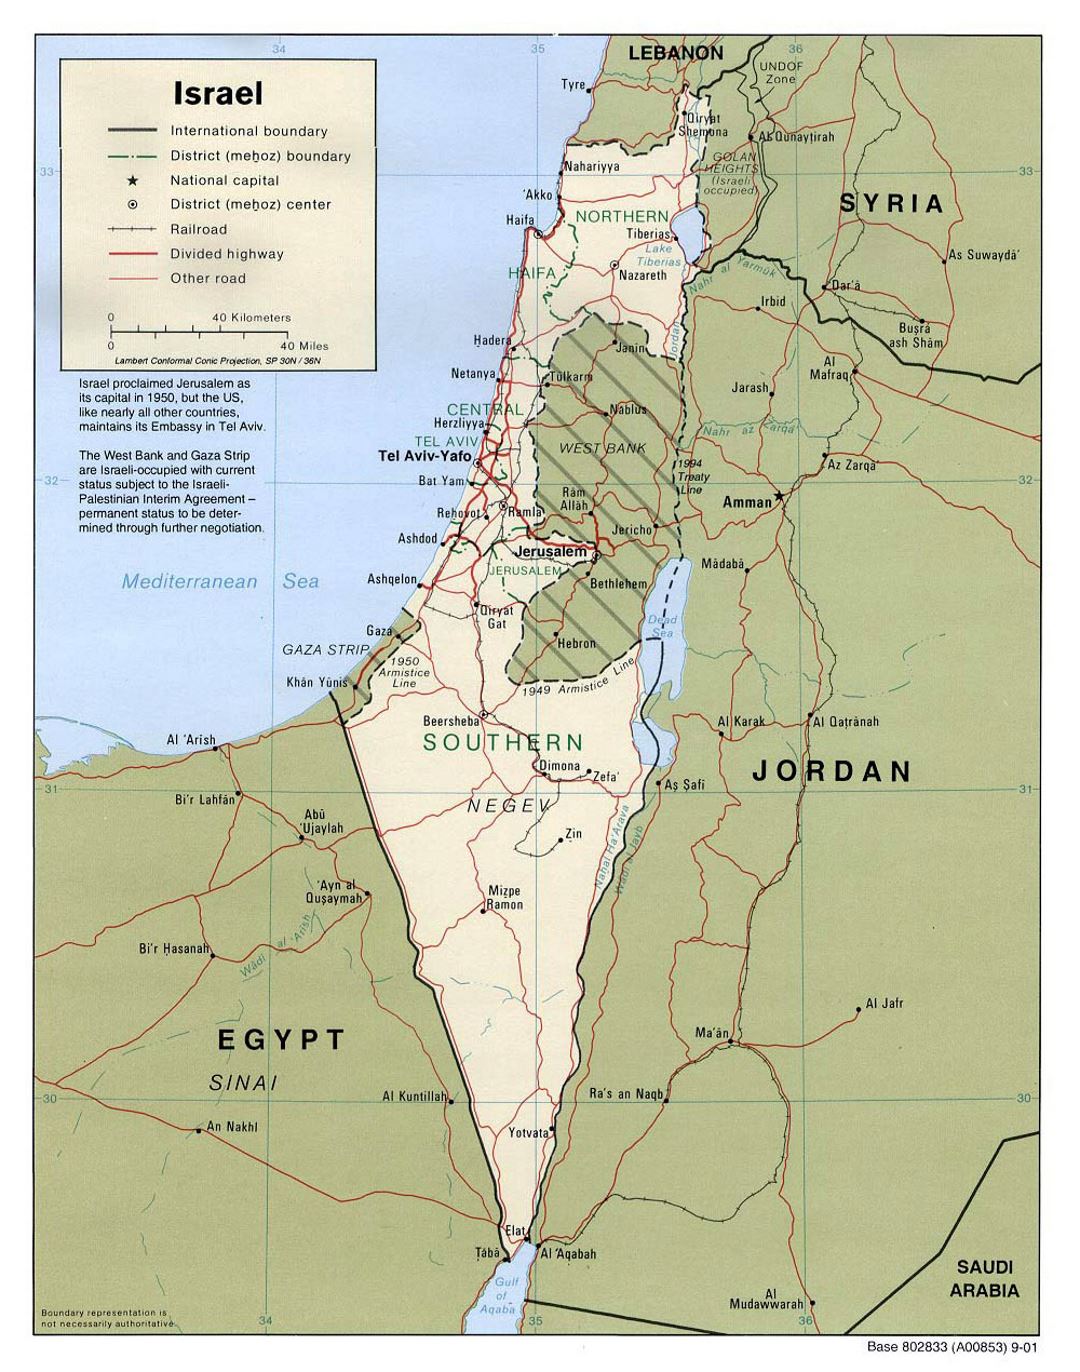 Detallado mapa político y administrativo de Israel con carreteras, ferrocarriles y principales ciudades - 2001